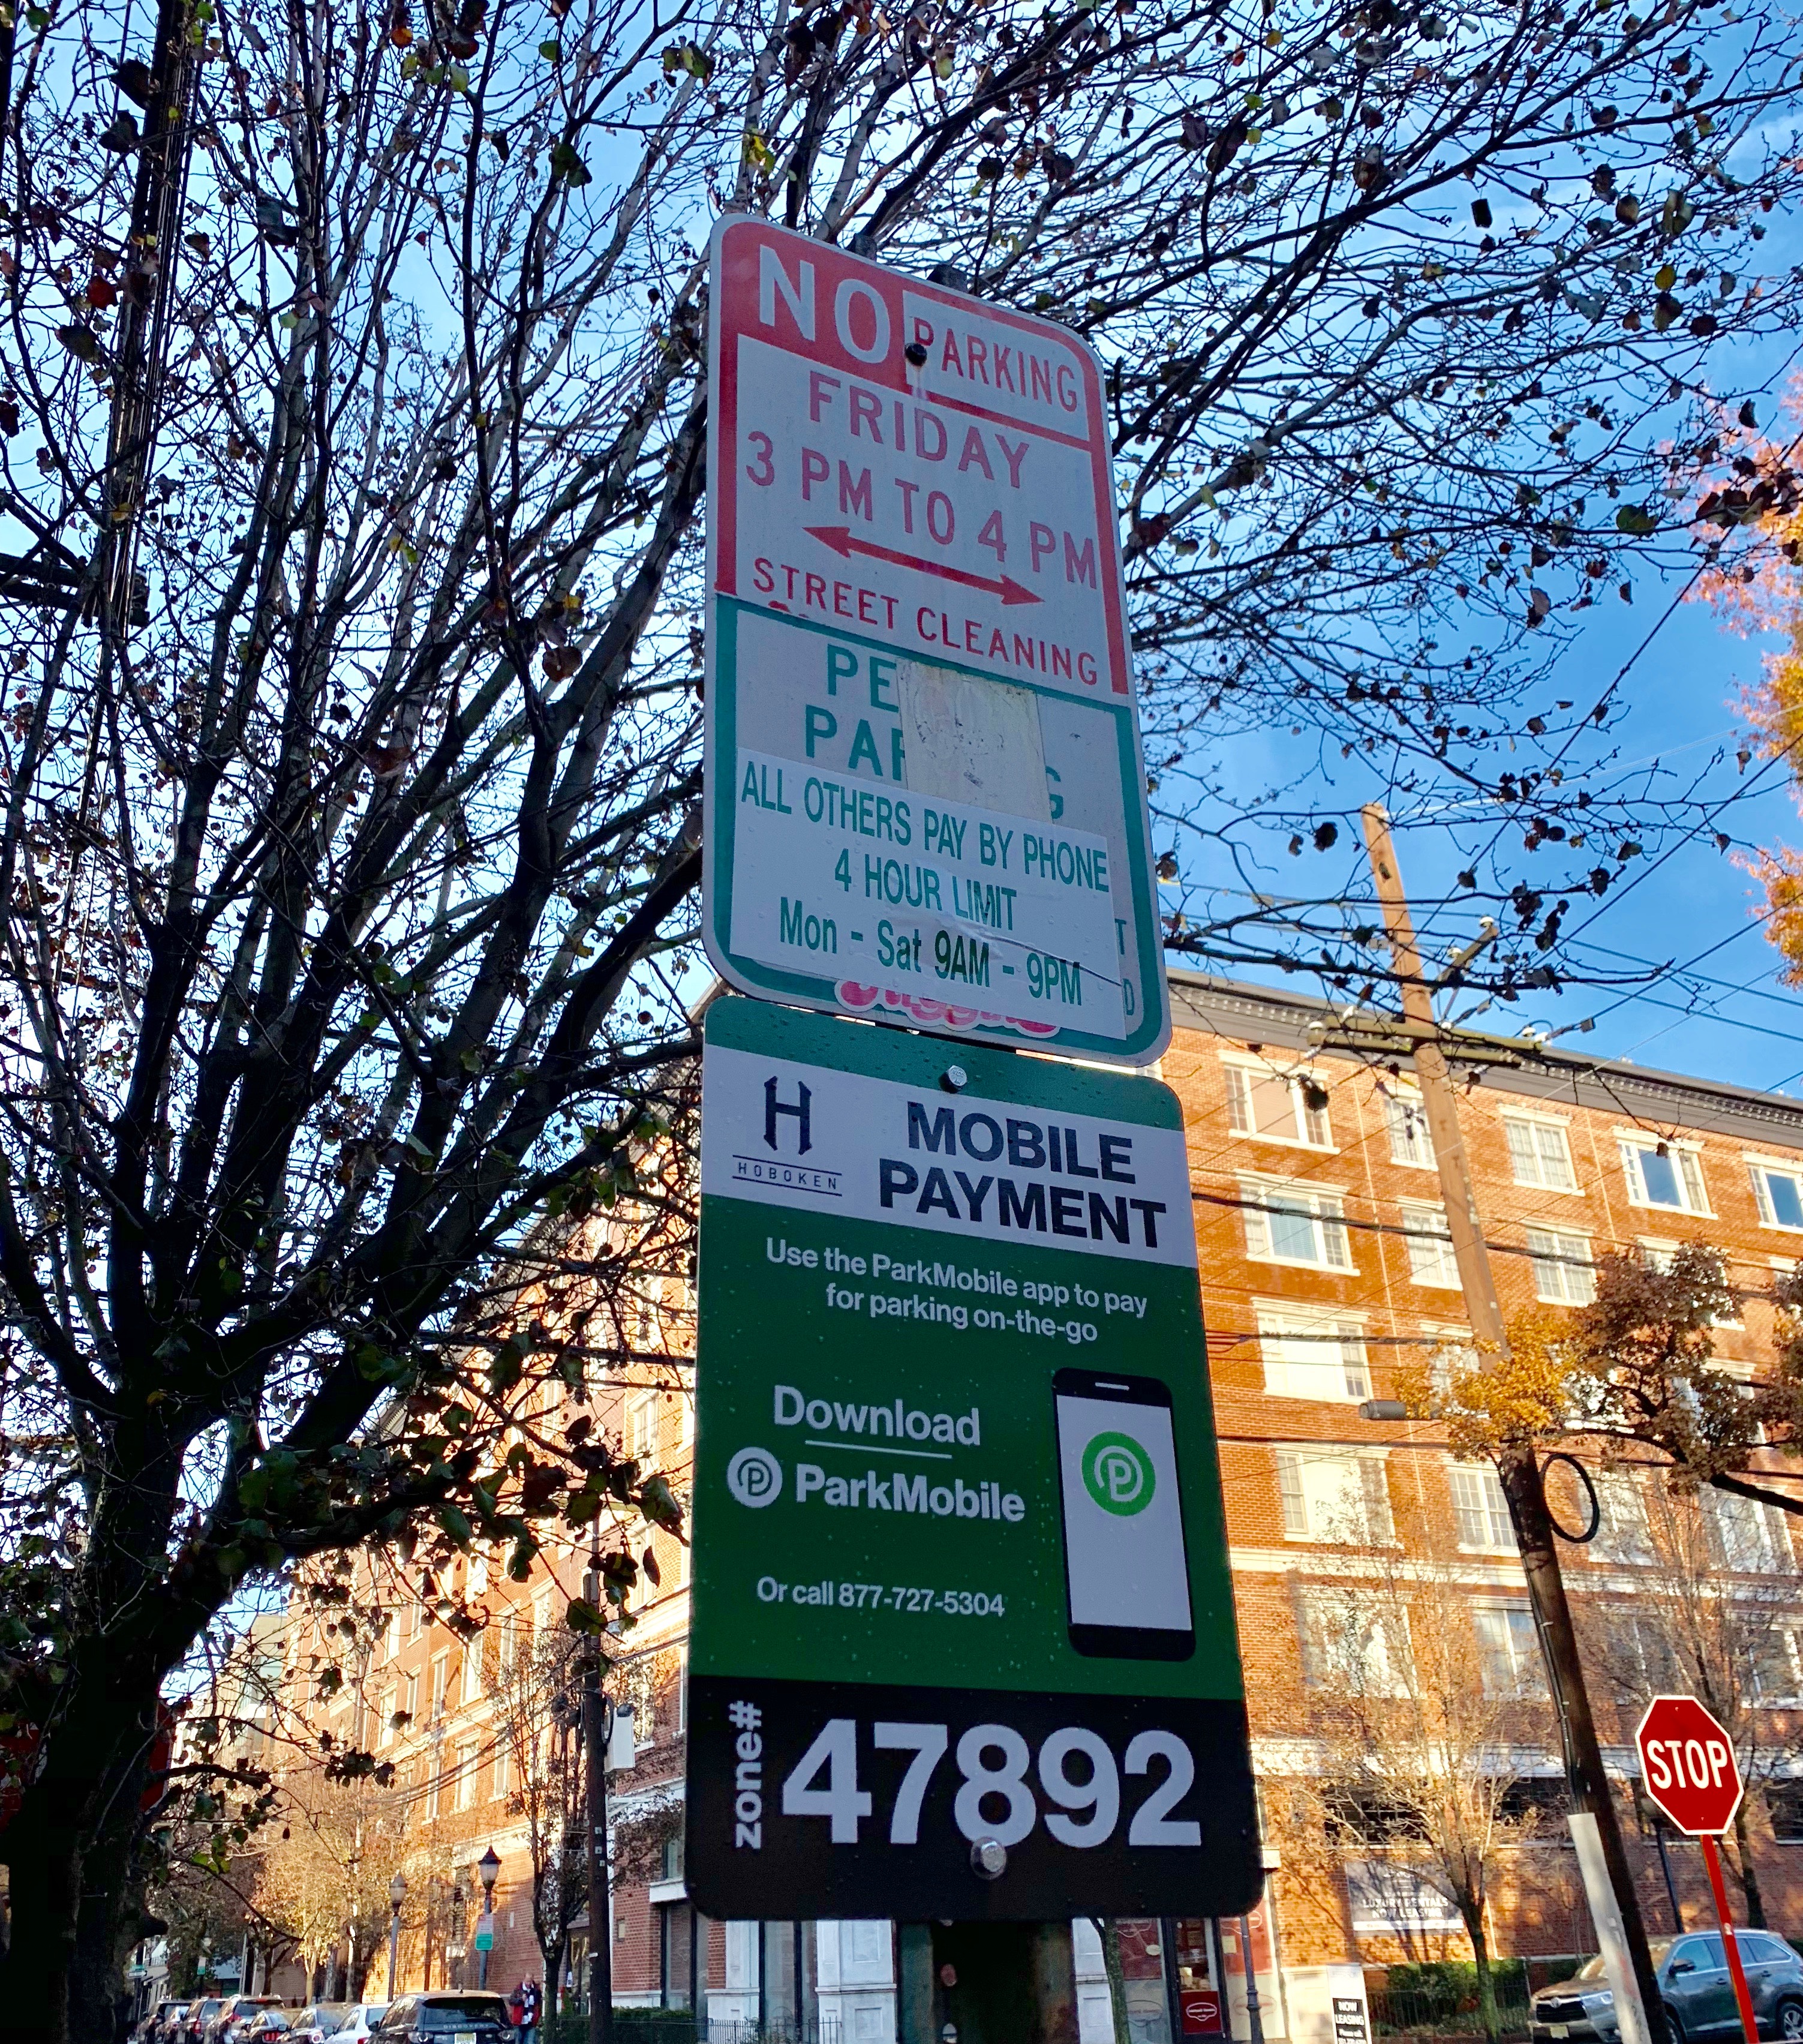 hoboken-parking-meter-apps-new